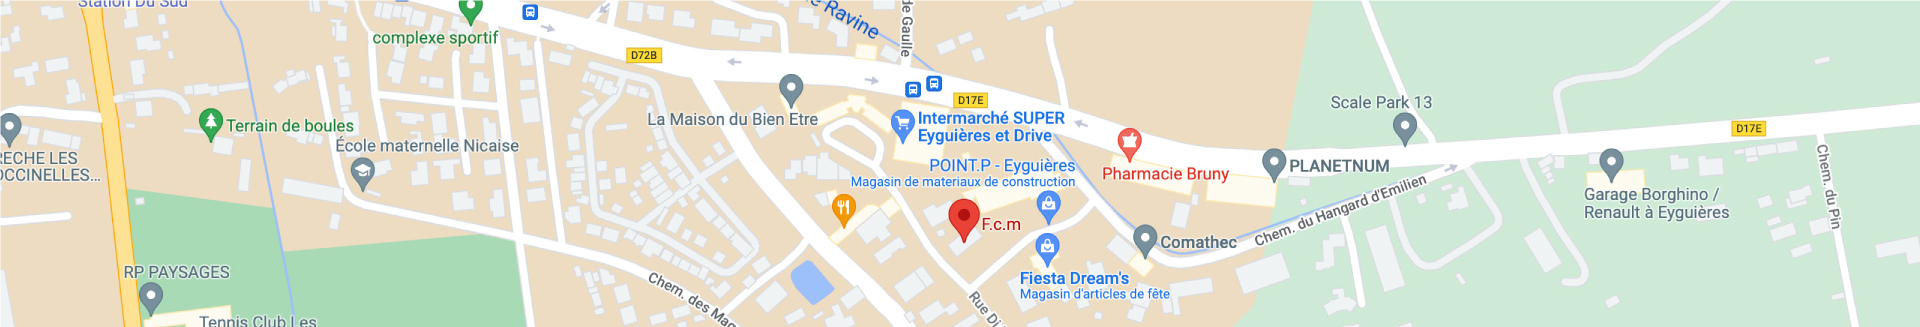 accueil-map-fcm